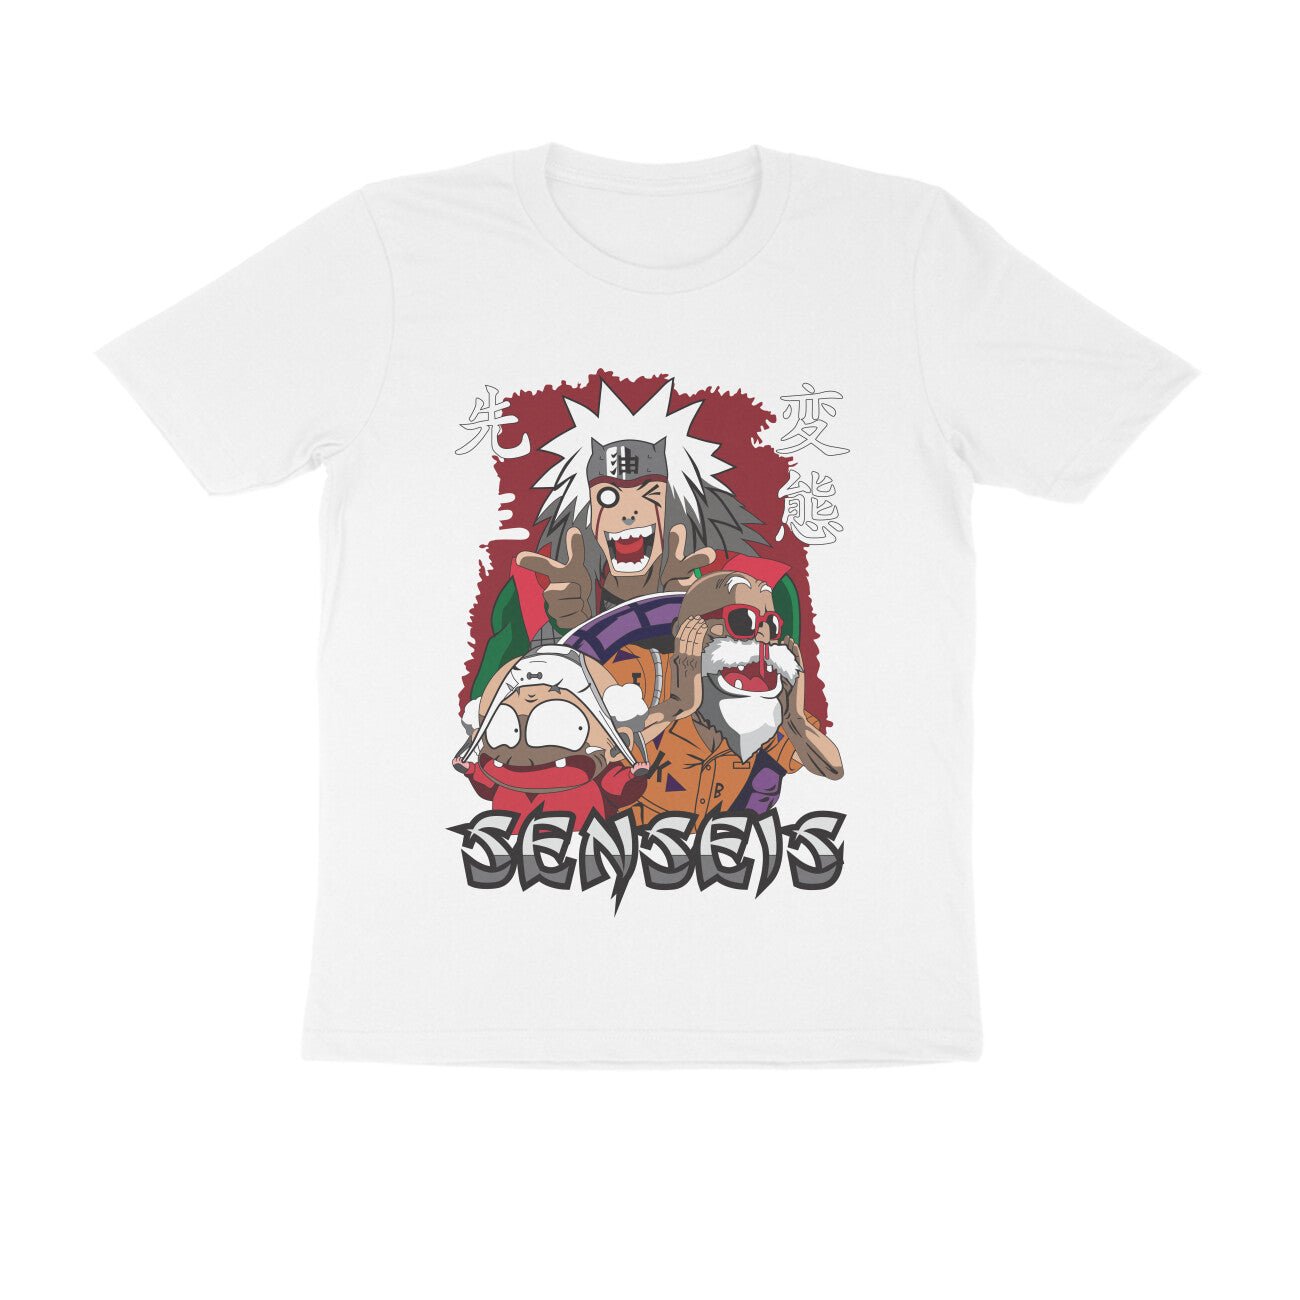 Naruto - sensei's - T-shirt - Kashiba Store